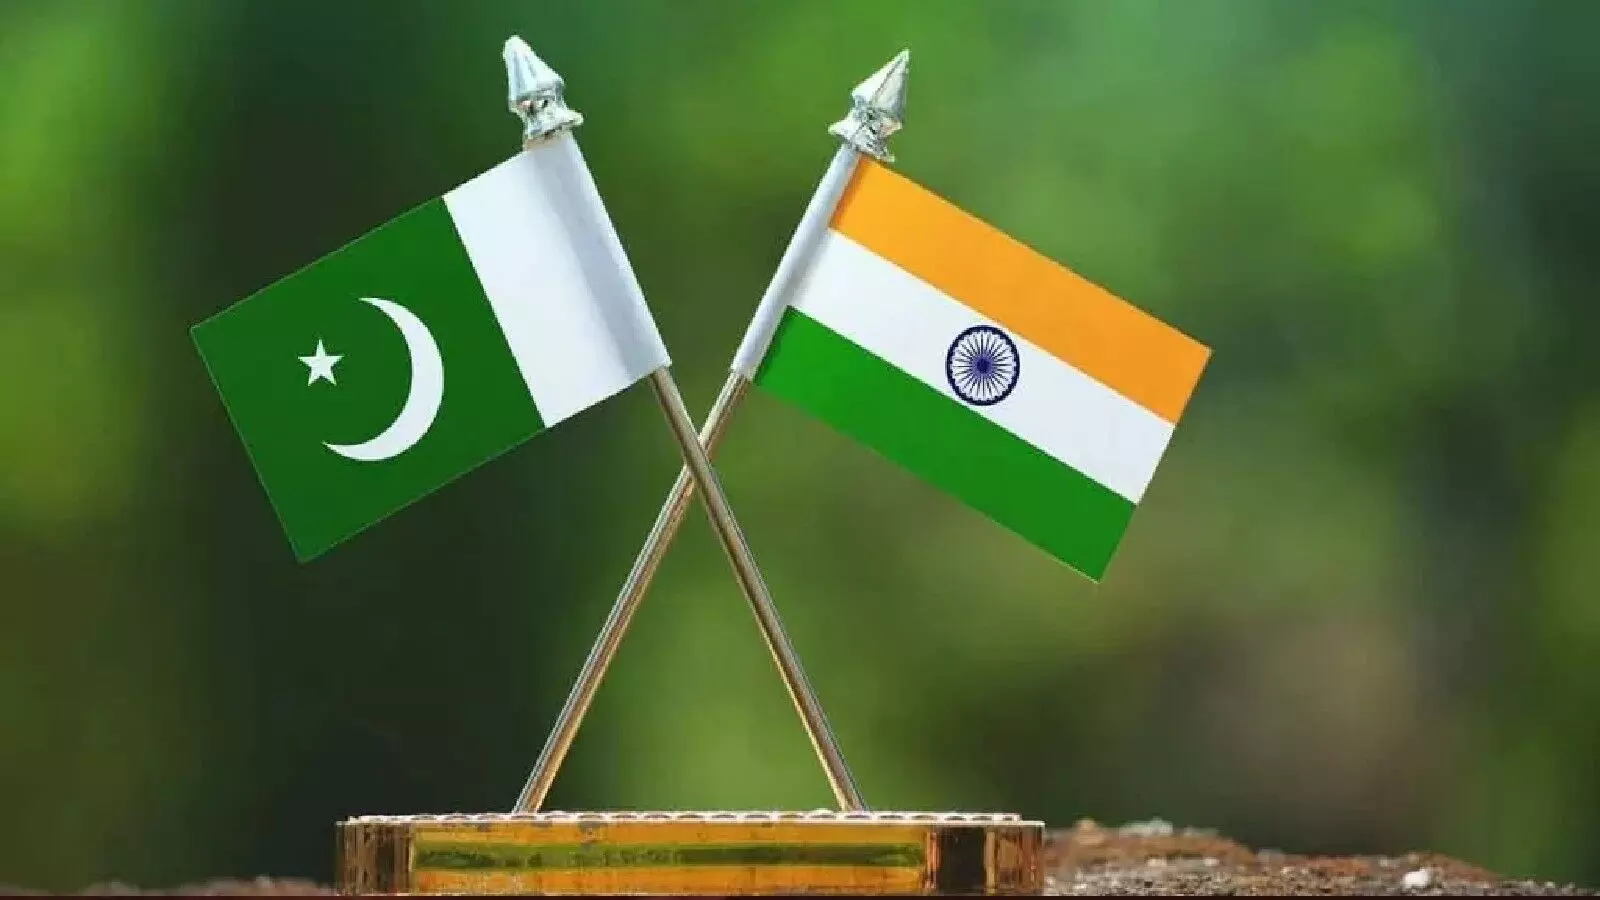 भारत और पाकिस्तान के बीच नाटकीय अंदाज में बढ़ते दोस्ताना संबंधों के पीछे एक रहस्य गहराया हुआ है।